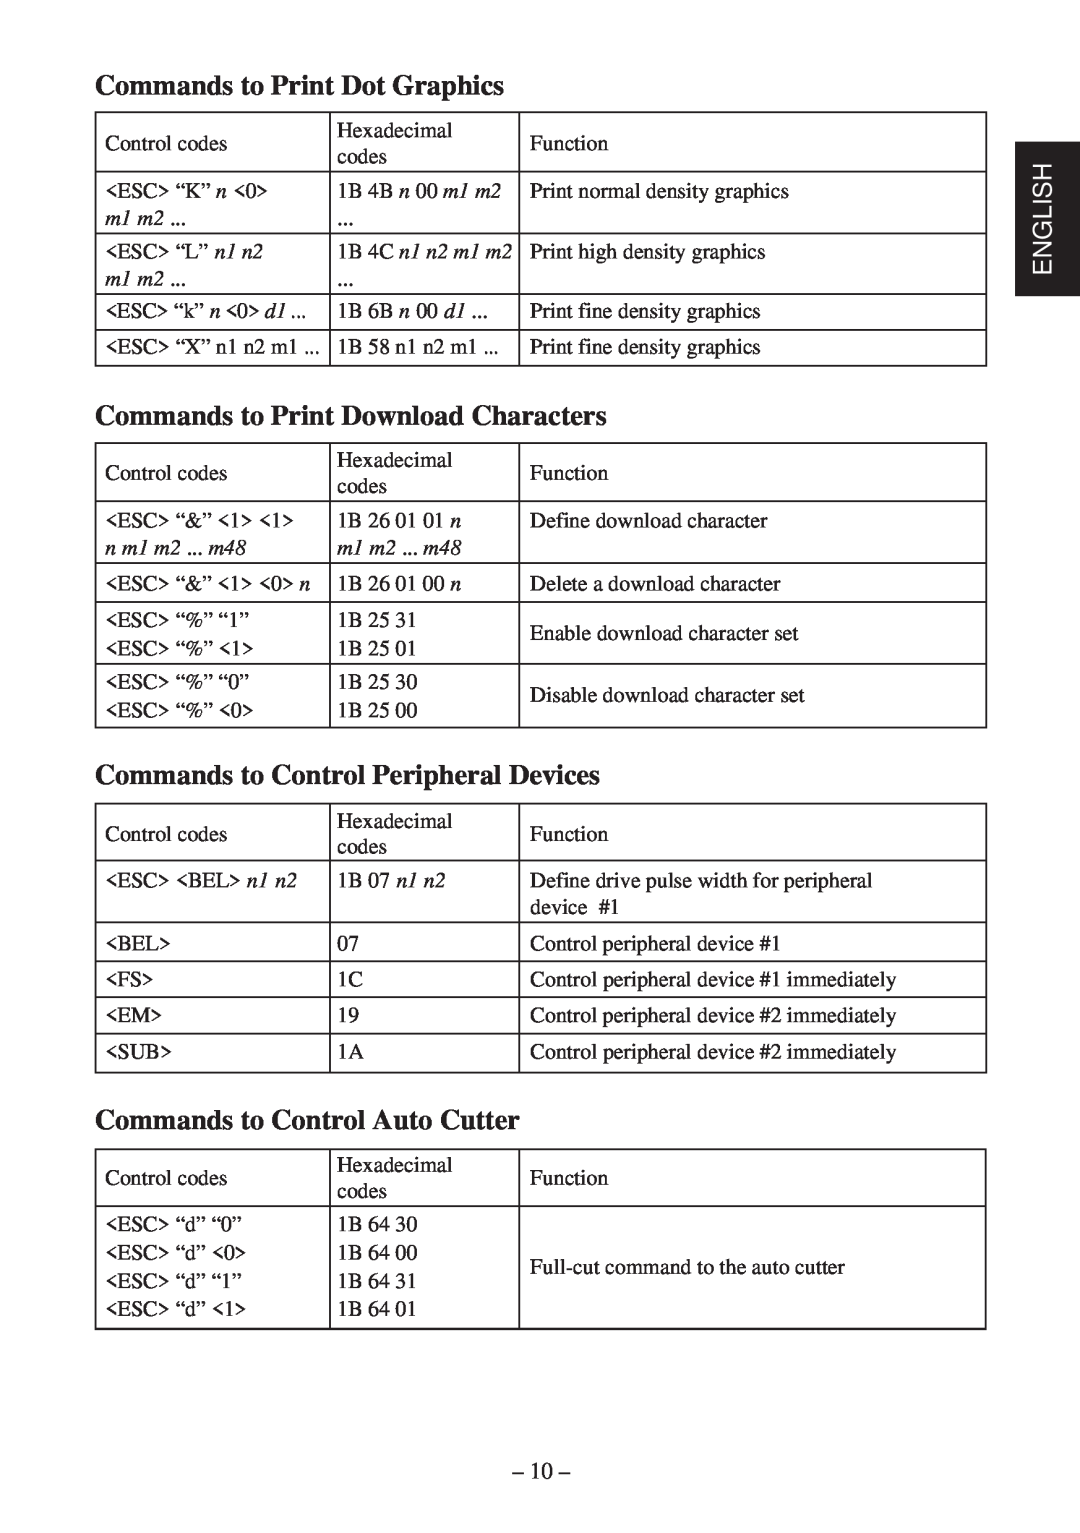 Star Micronics TSP400 Series Commands to Print Dot Graphics, Commands to Print Download Characters, 4B n 00 m1 m2, n1 n2 